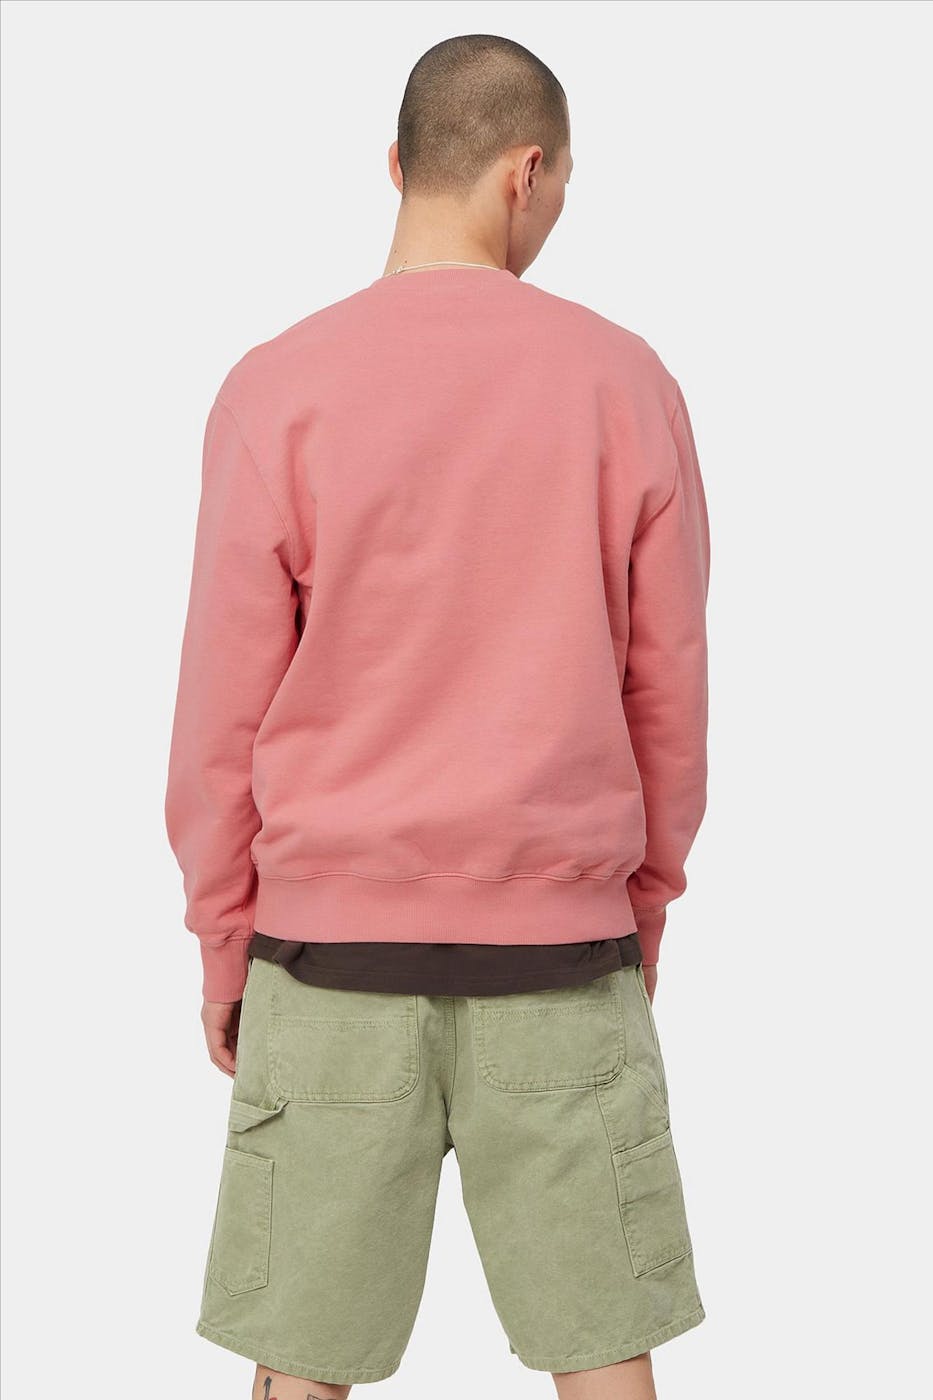 Carhartt WIP - Roze Pocket sweater